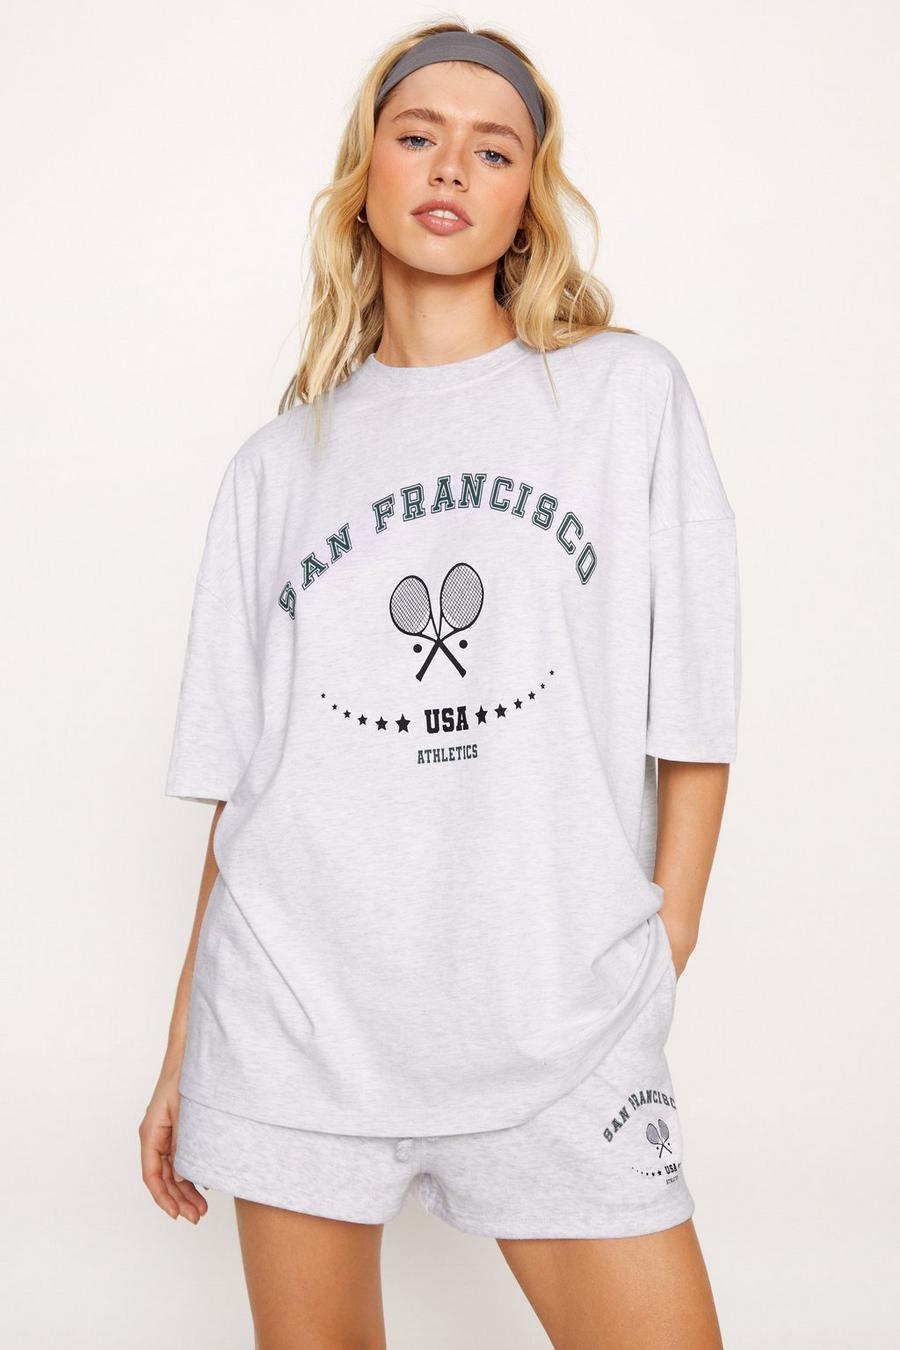 San Francisco Slogan T-shirt and Shorts Set